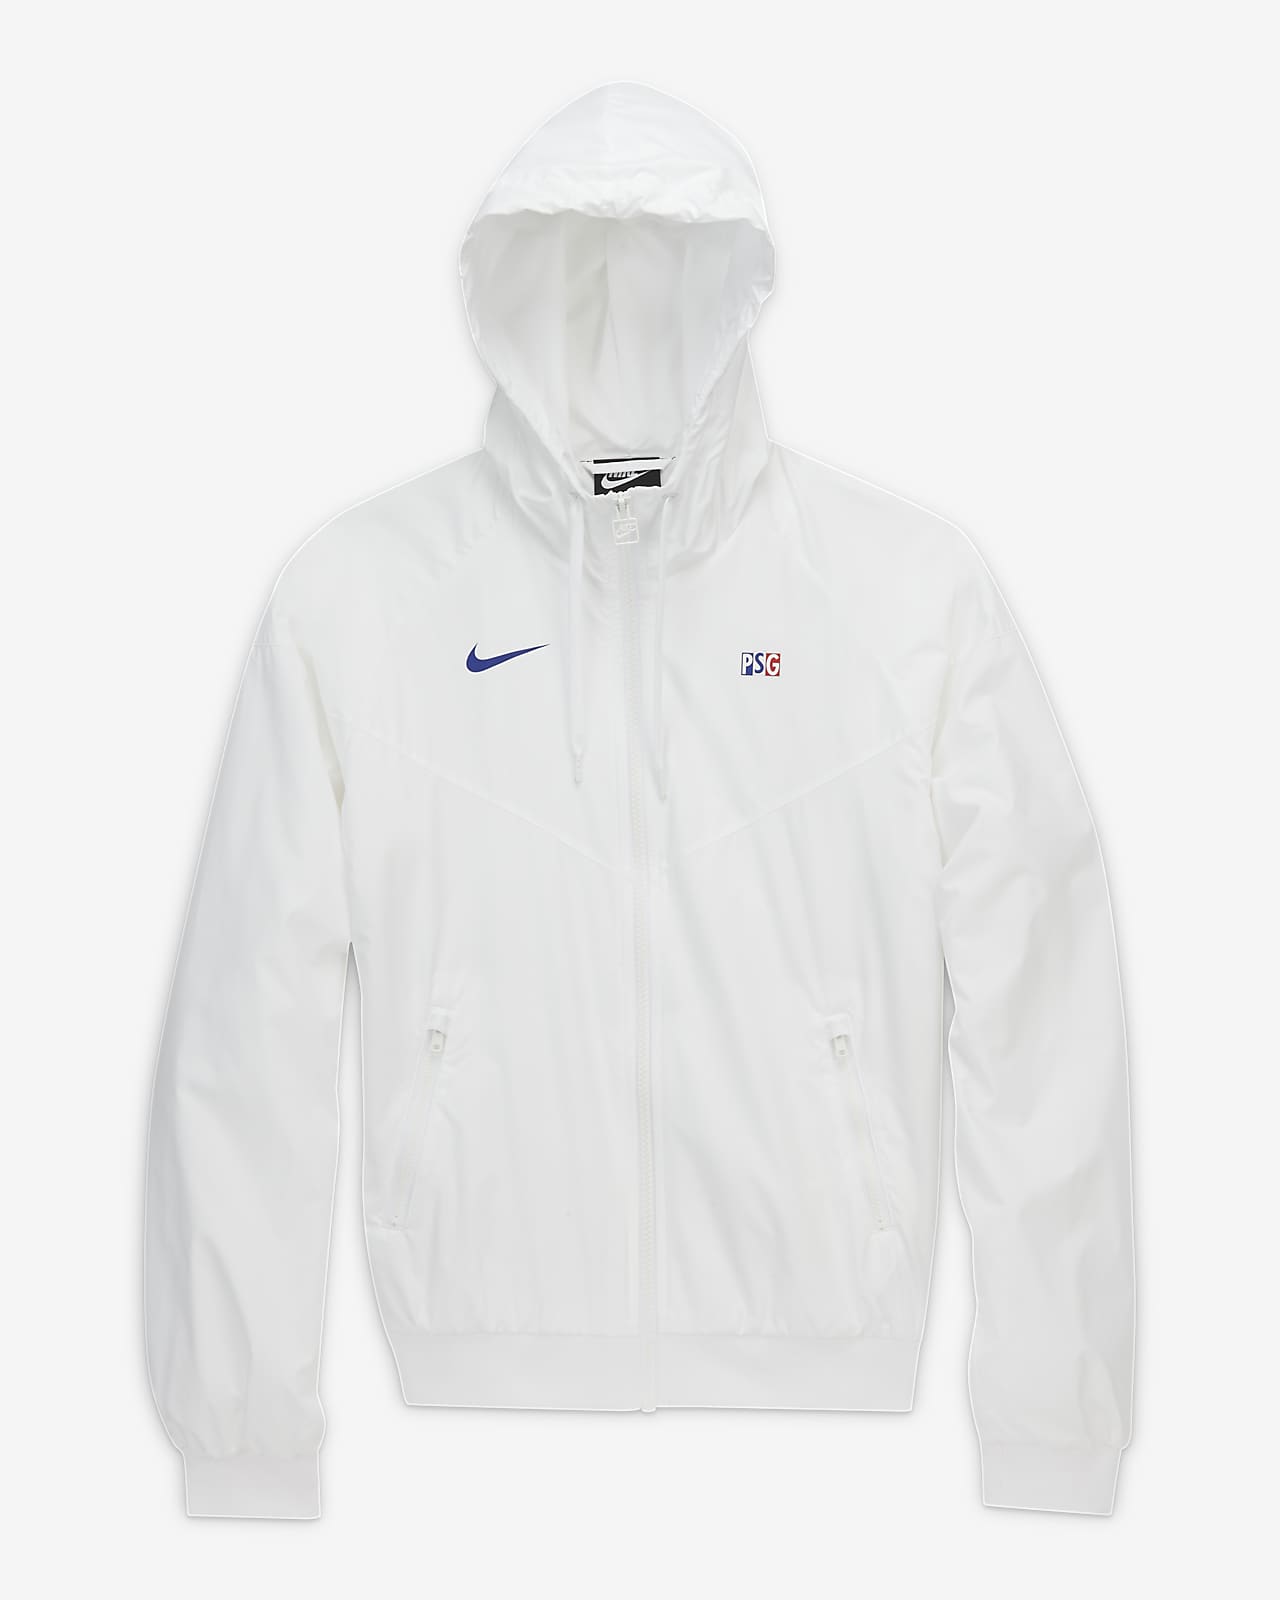 psg white jacket